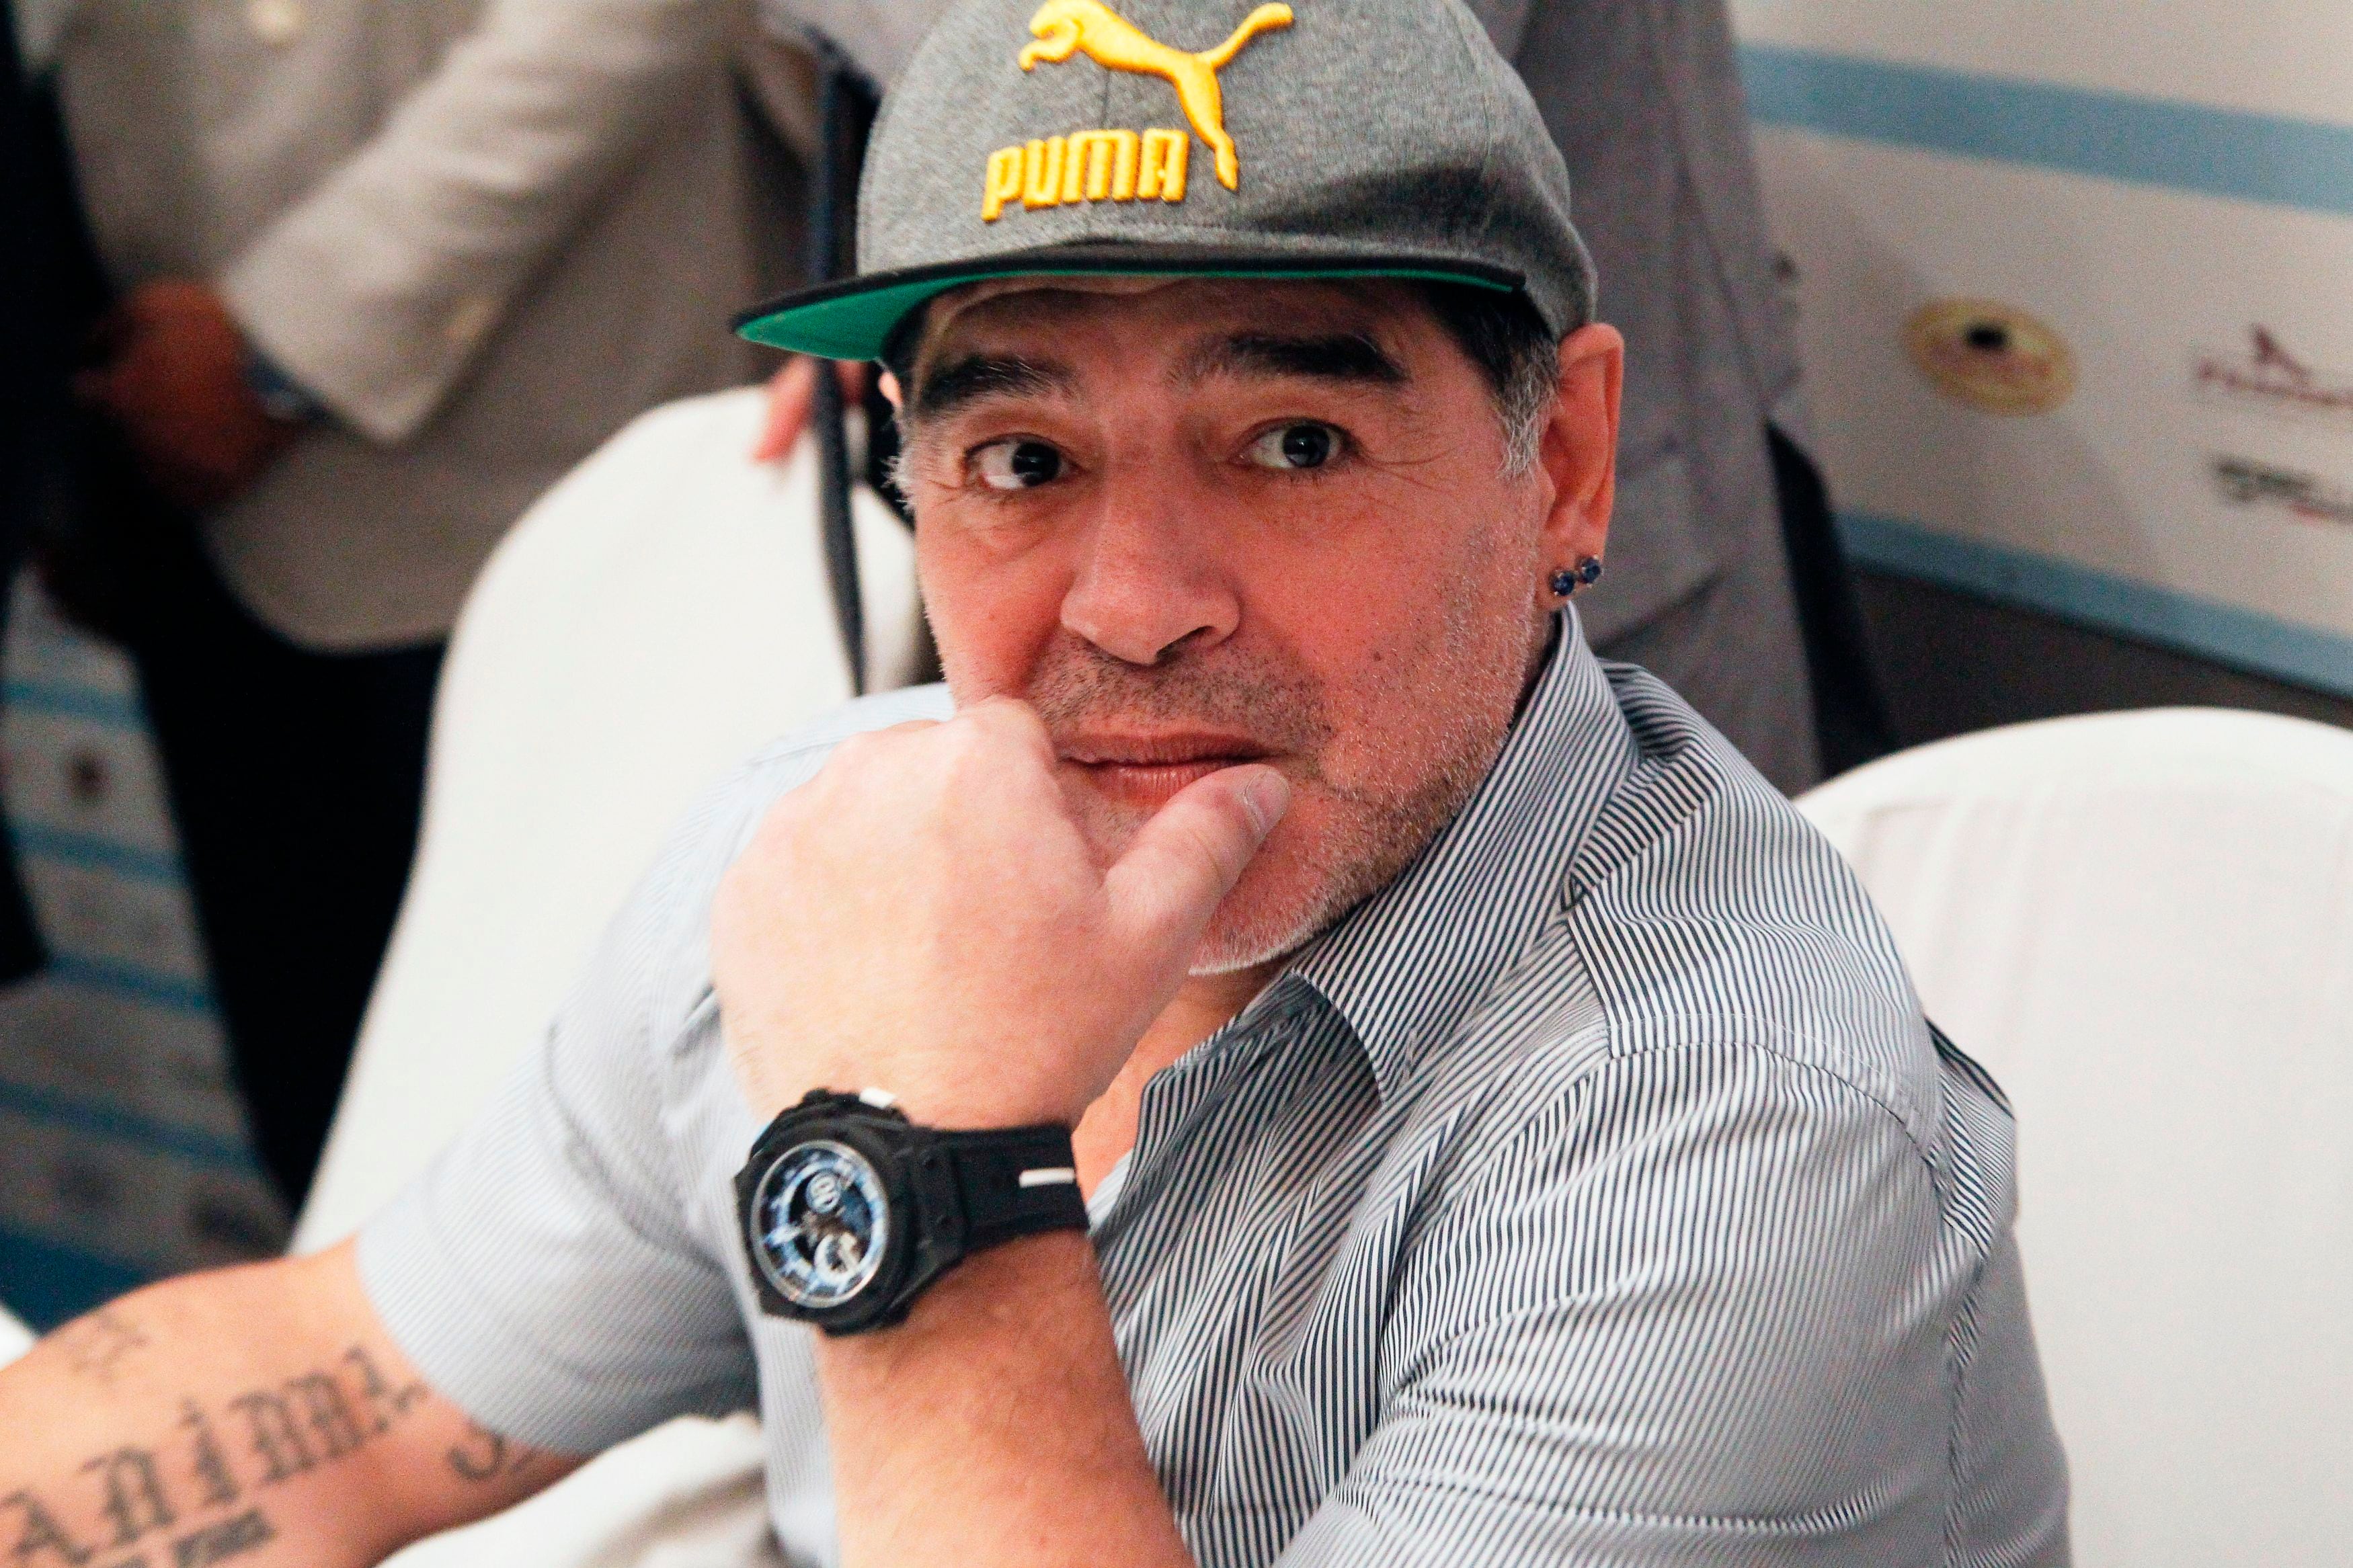 ‘Demencia alcohólica. Lo que se vislumbra en Diego Maradona es párkinson’, el duro mensaje que encuentra  Fiscalía en uno de los celulares de los doctores del ‘10’